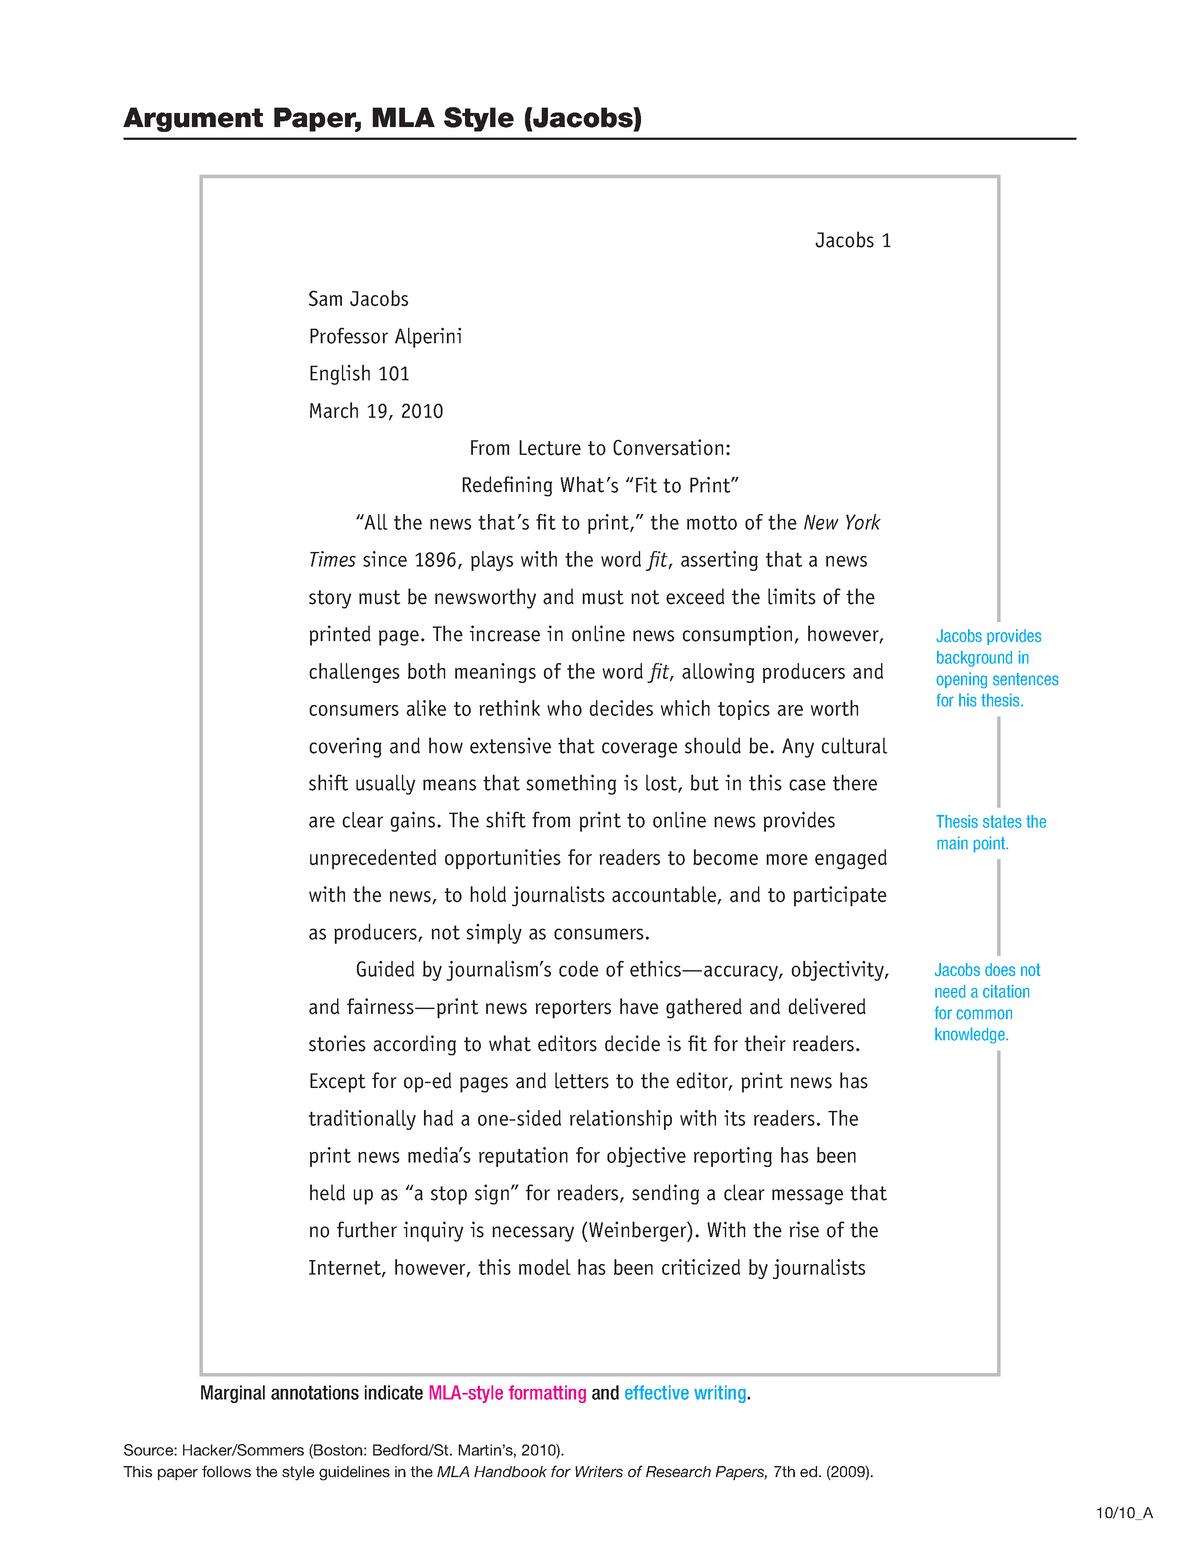 Argument Paper MLA Style (Jacobs) - Studocu